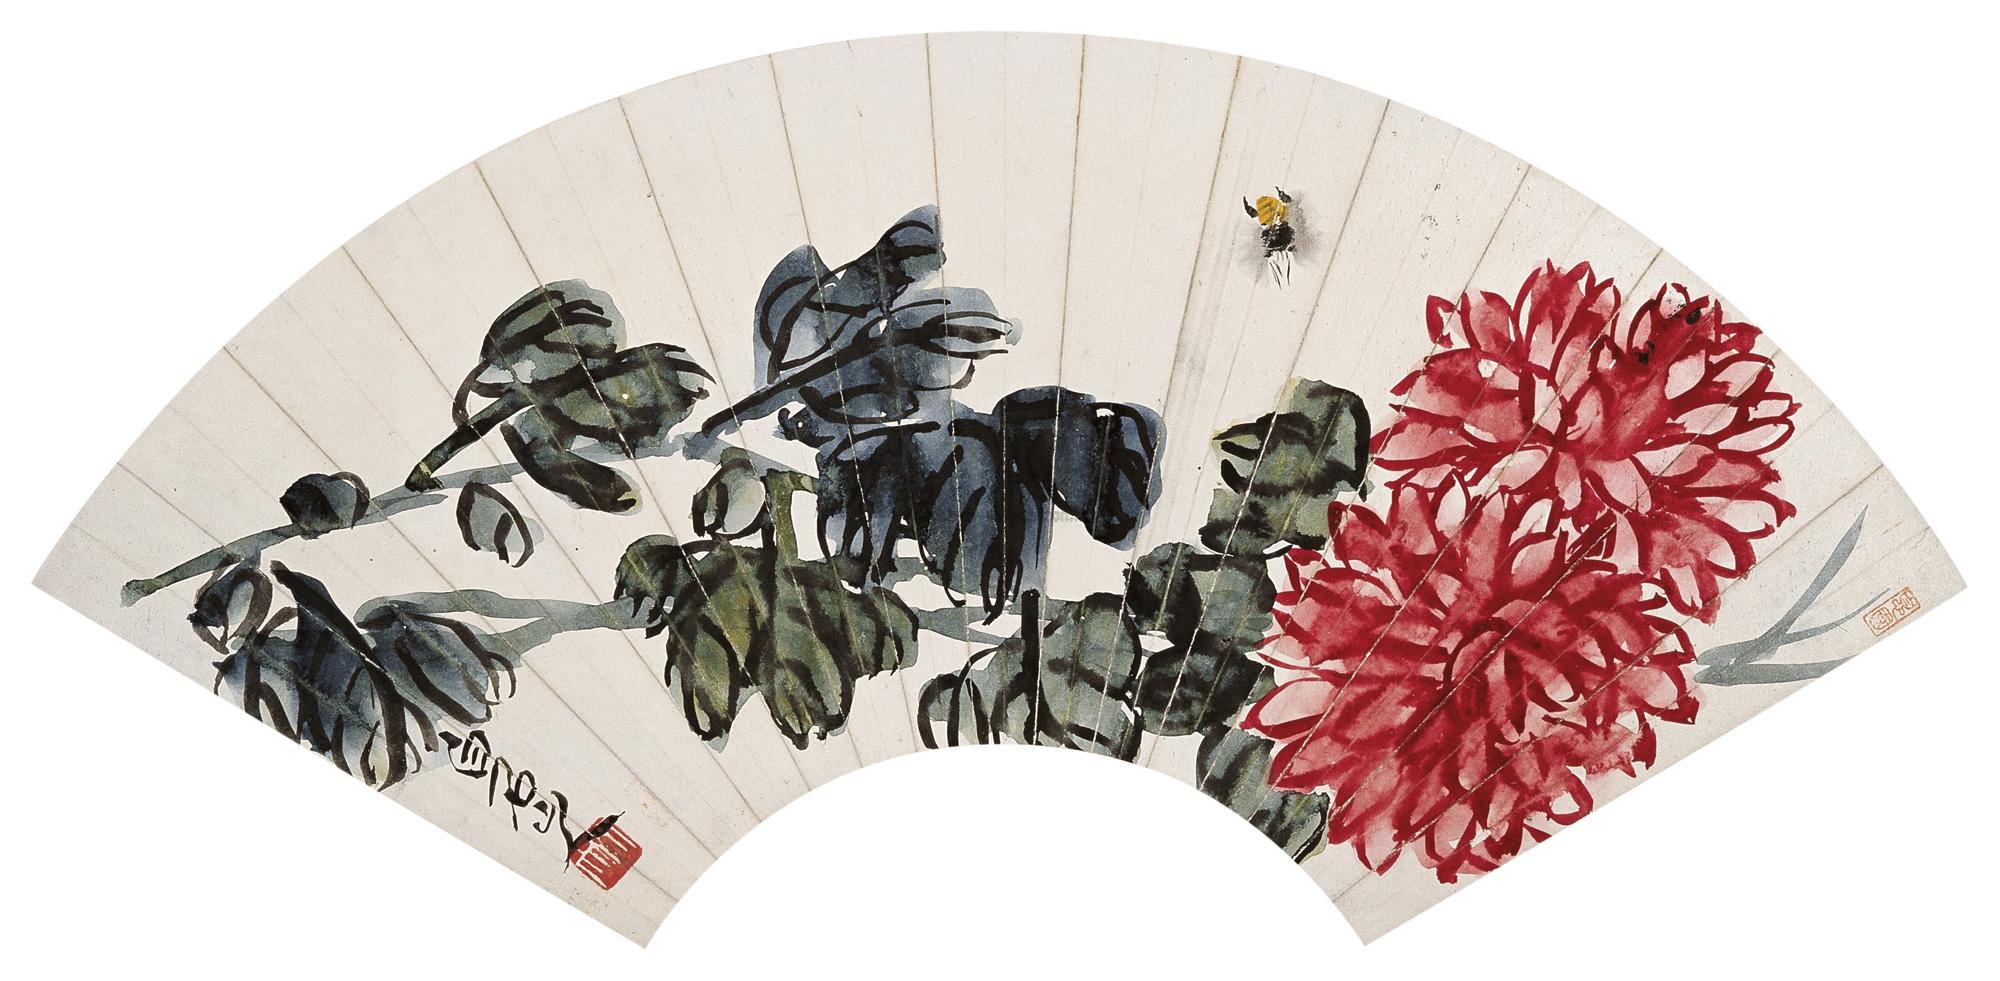 菊花国画扇形图片